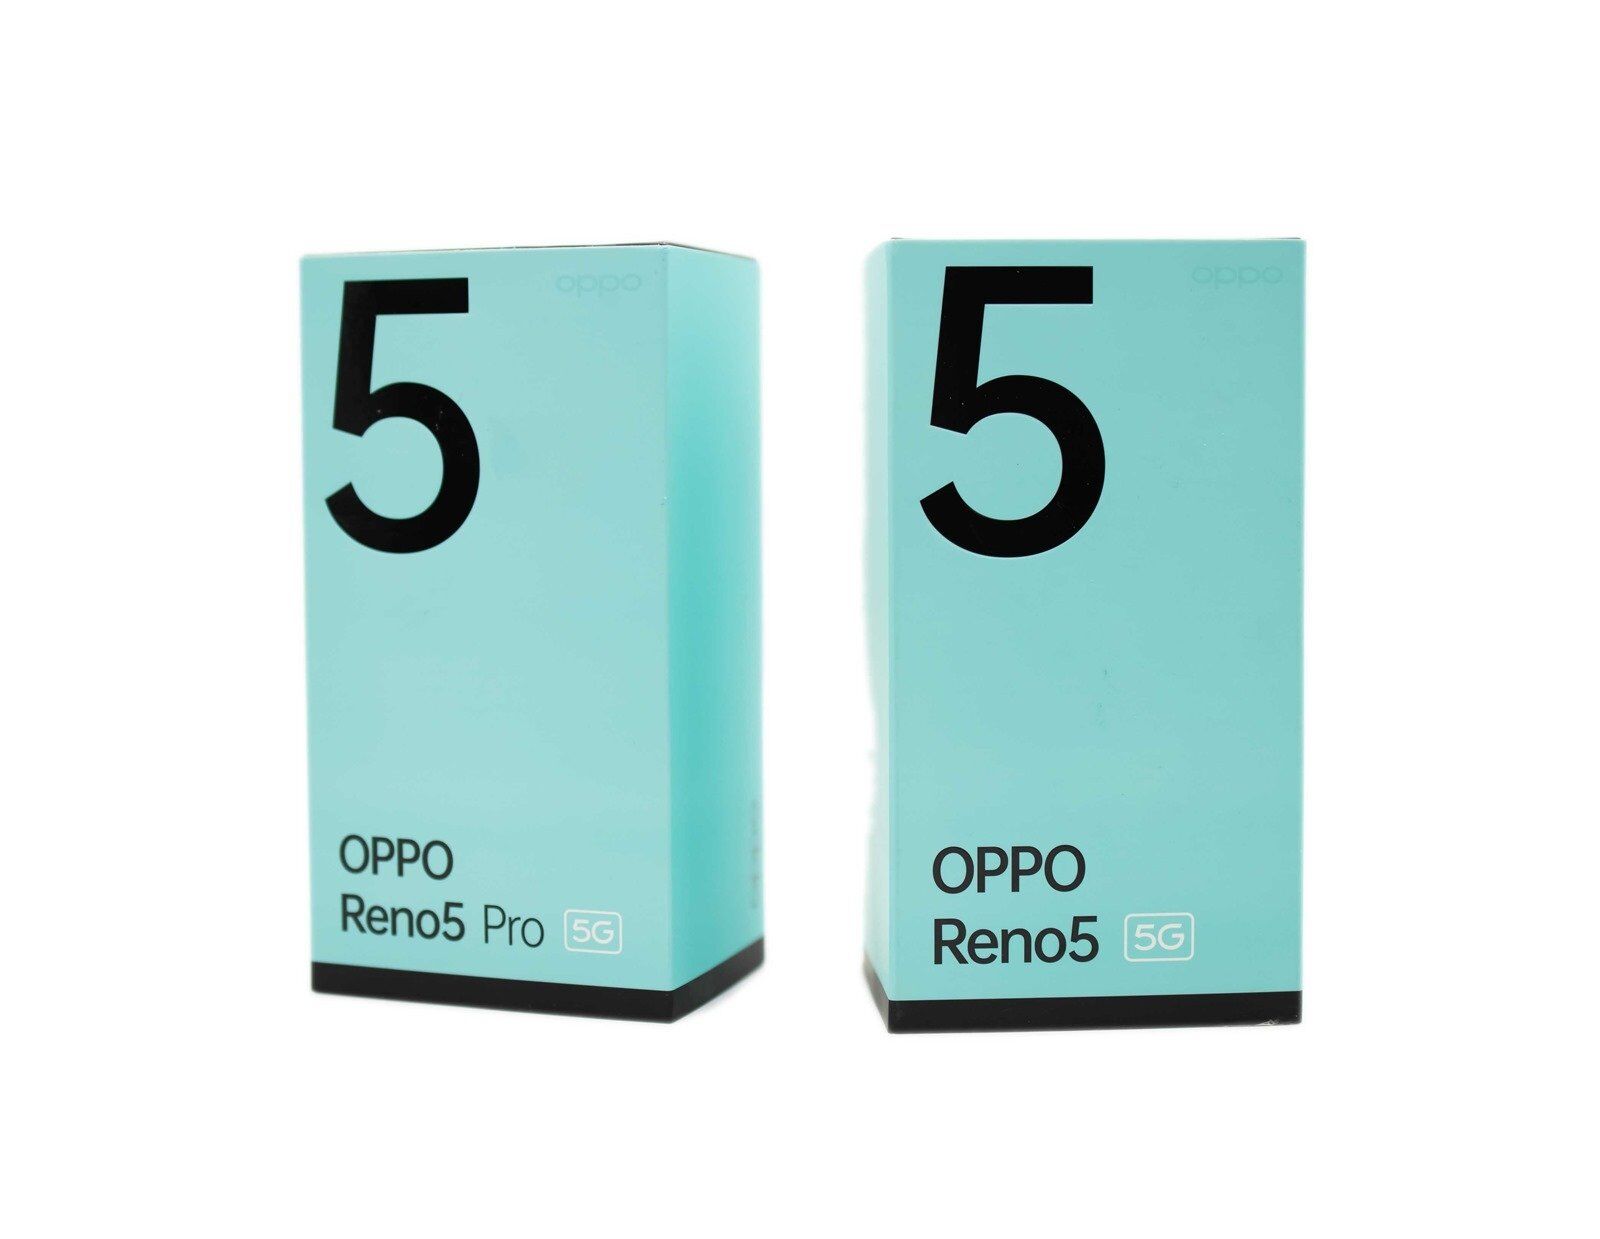 [影片] 極致輕薄美型 OPPO Reno 5 Pro 開箱完整評測 @3C 達人廖阿輝